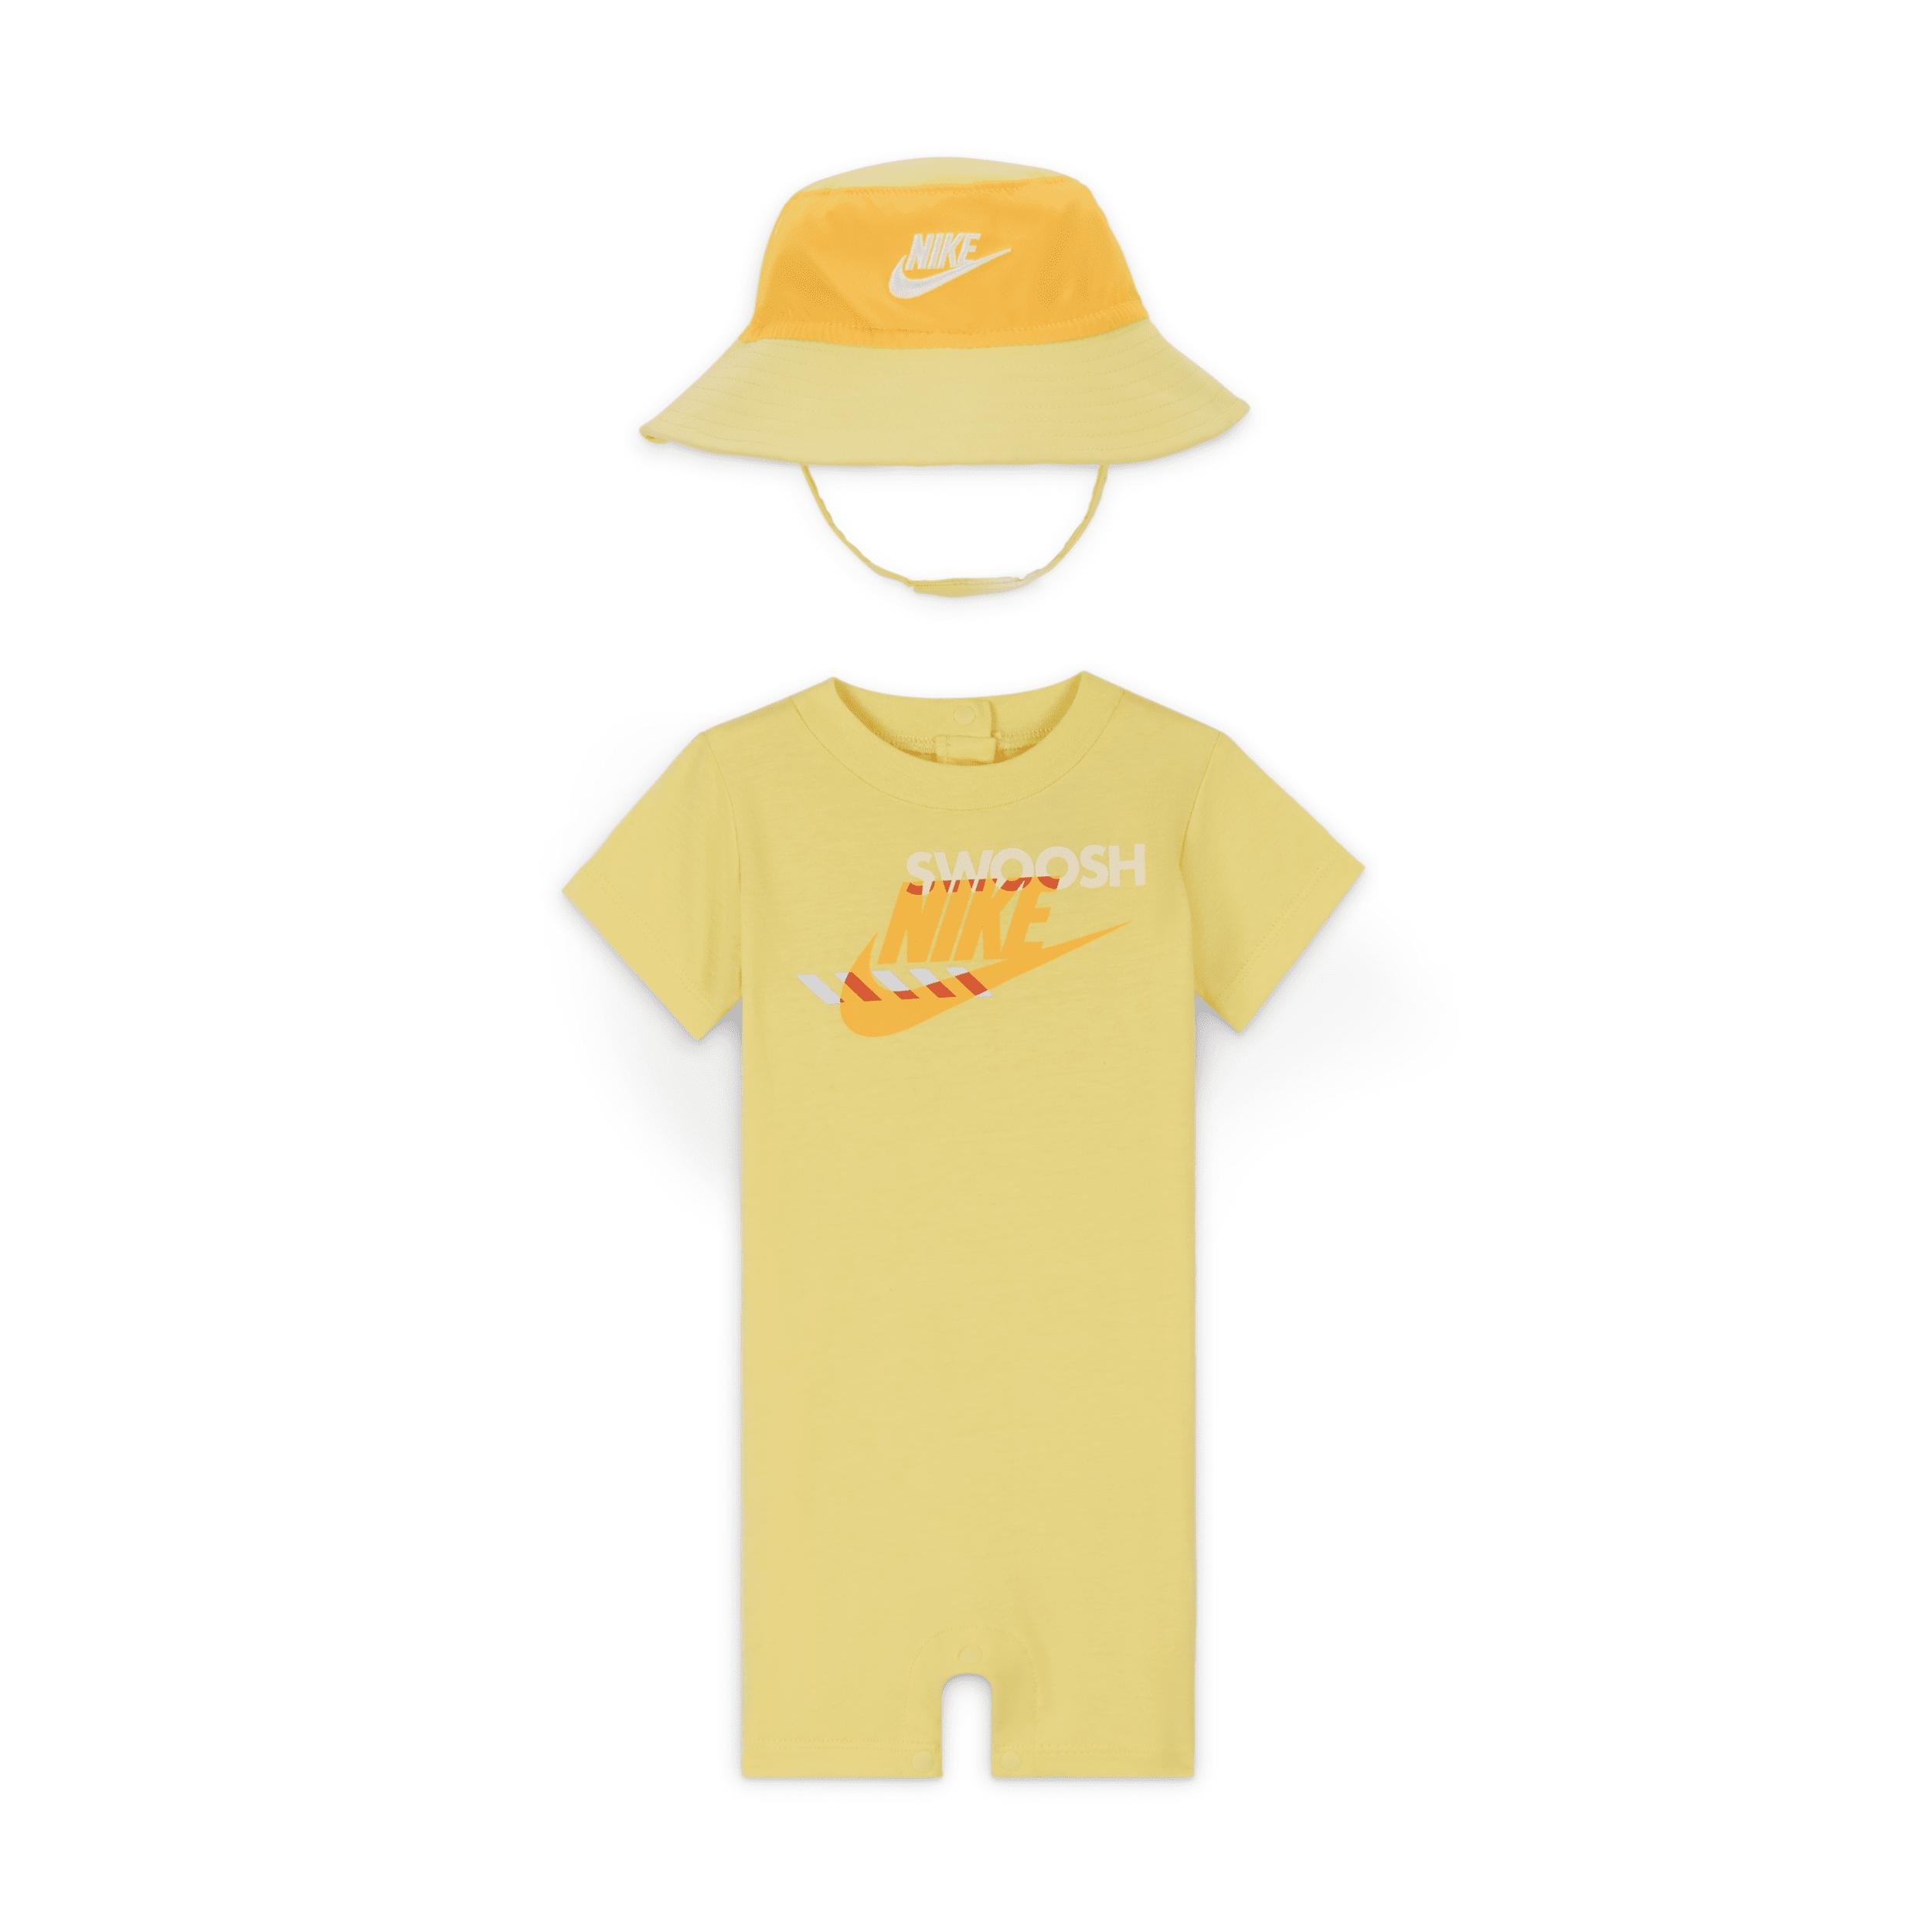 Nike Sportswear PE Baby (0-9M) Romper and Bucket Hat Set by NIKE